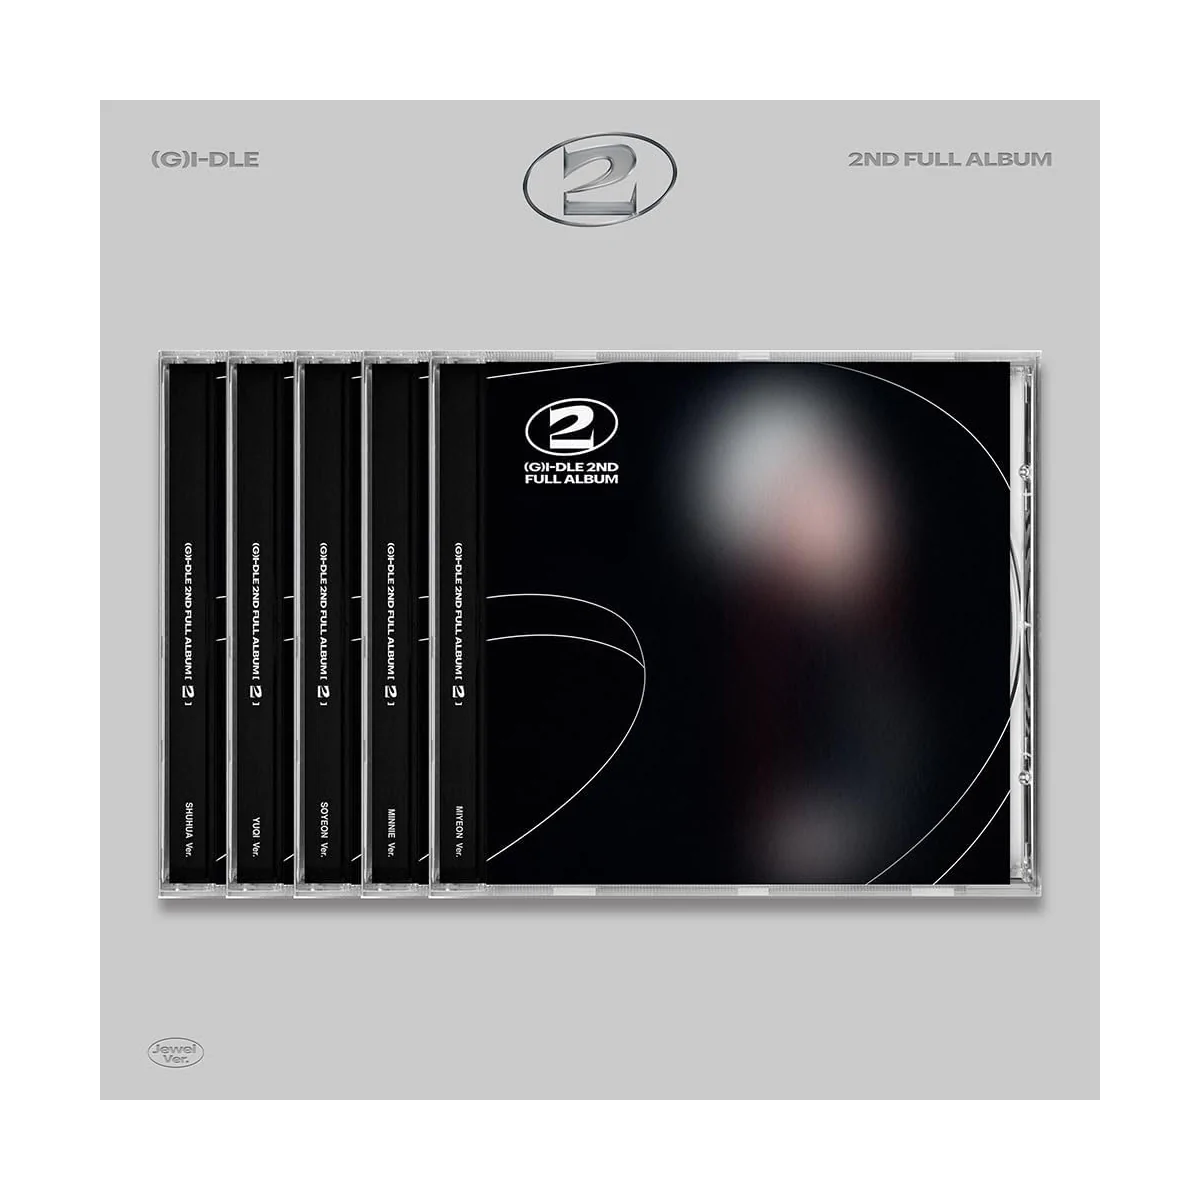 (G)I-DLE - 2 (Jewel MINNIE Version) (2nd Full Album) 